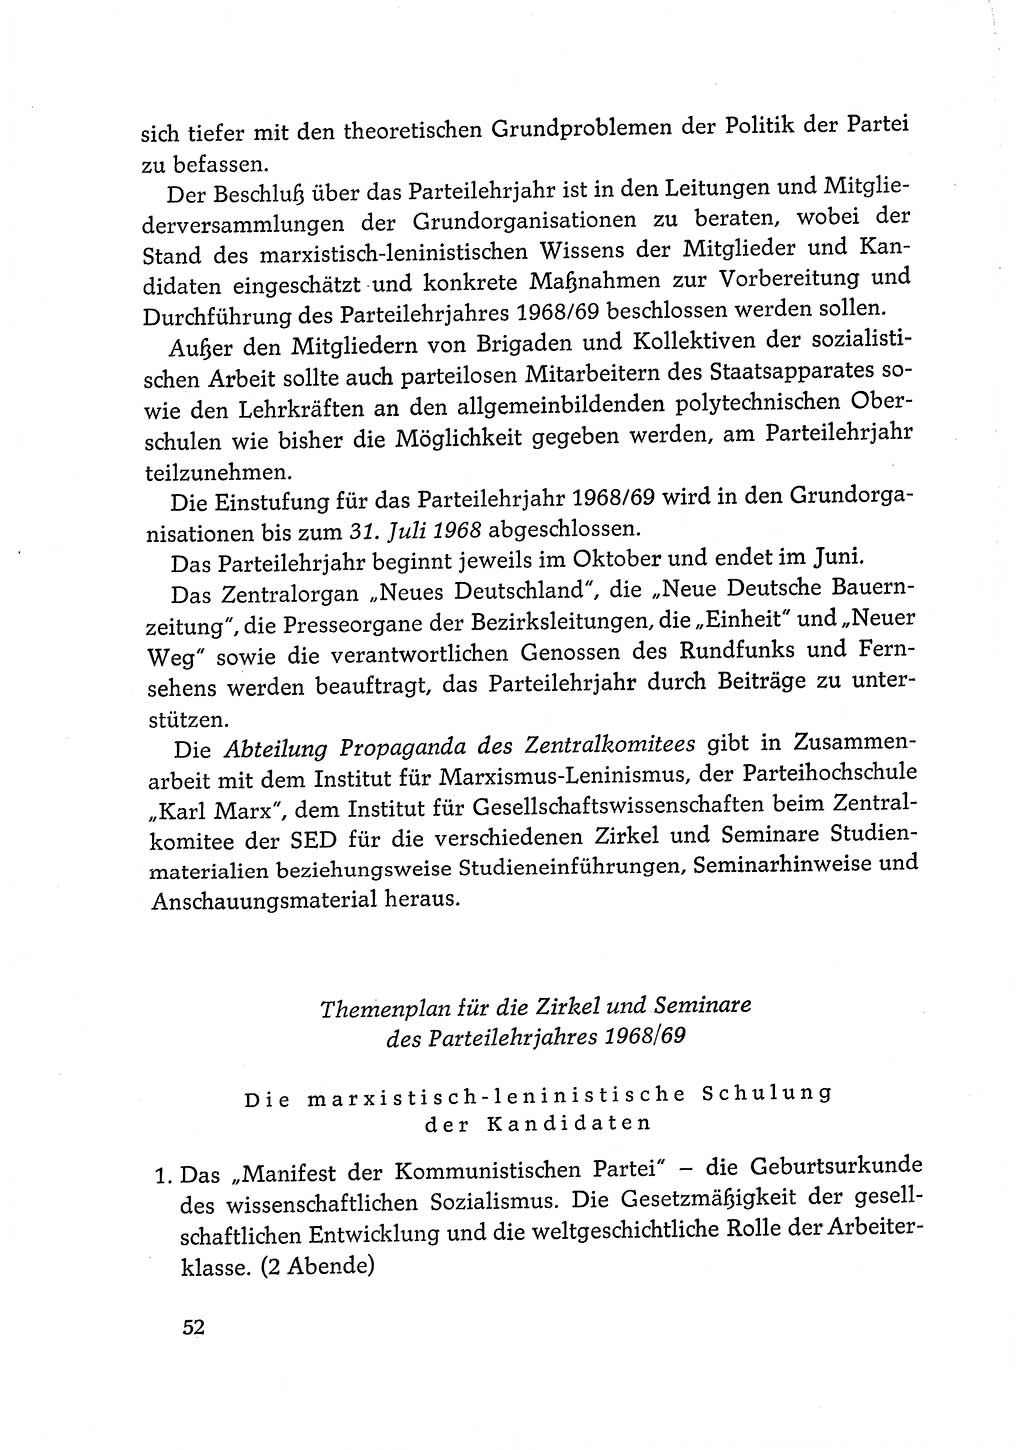 Dokumente der Sozialistischen Einheitspartei Deutschlands (SED) [Deutsche Demokratische Republik (DDR)] 1968-1969, Seite 52 (Dok. SED DDR 1968-1969, S. 52)